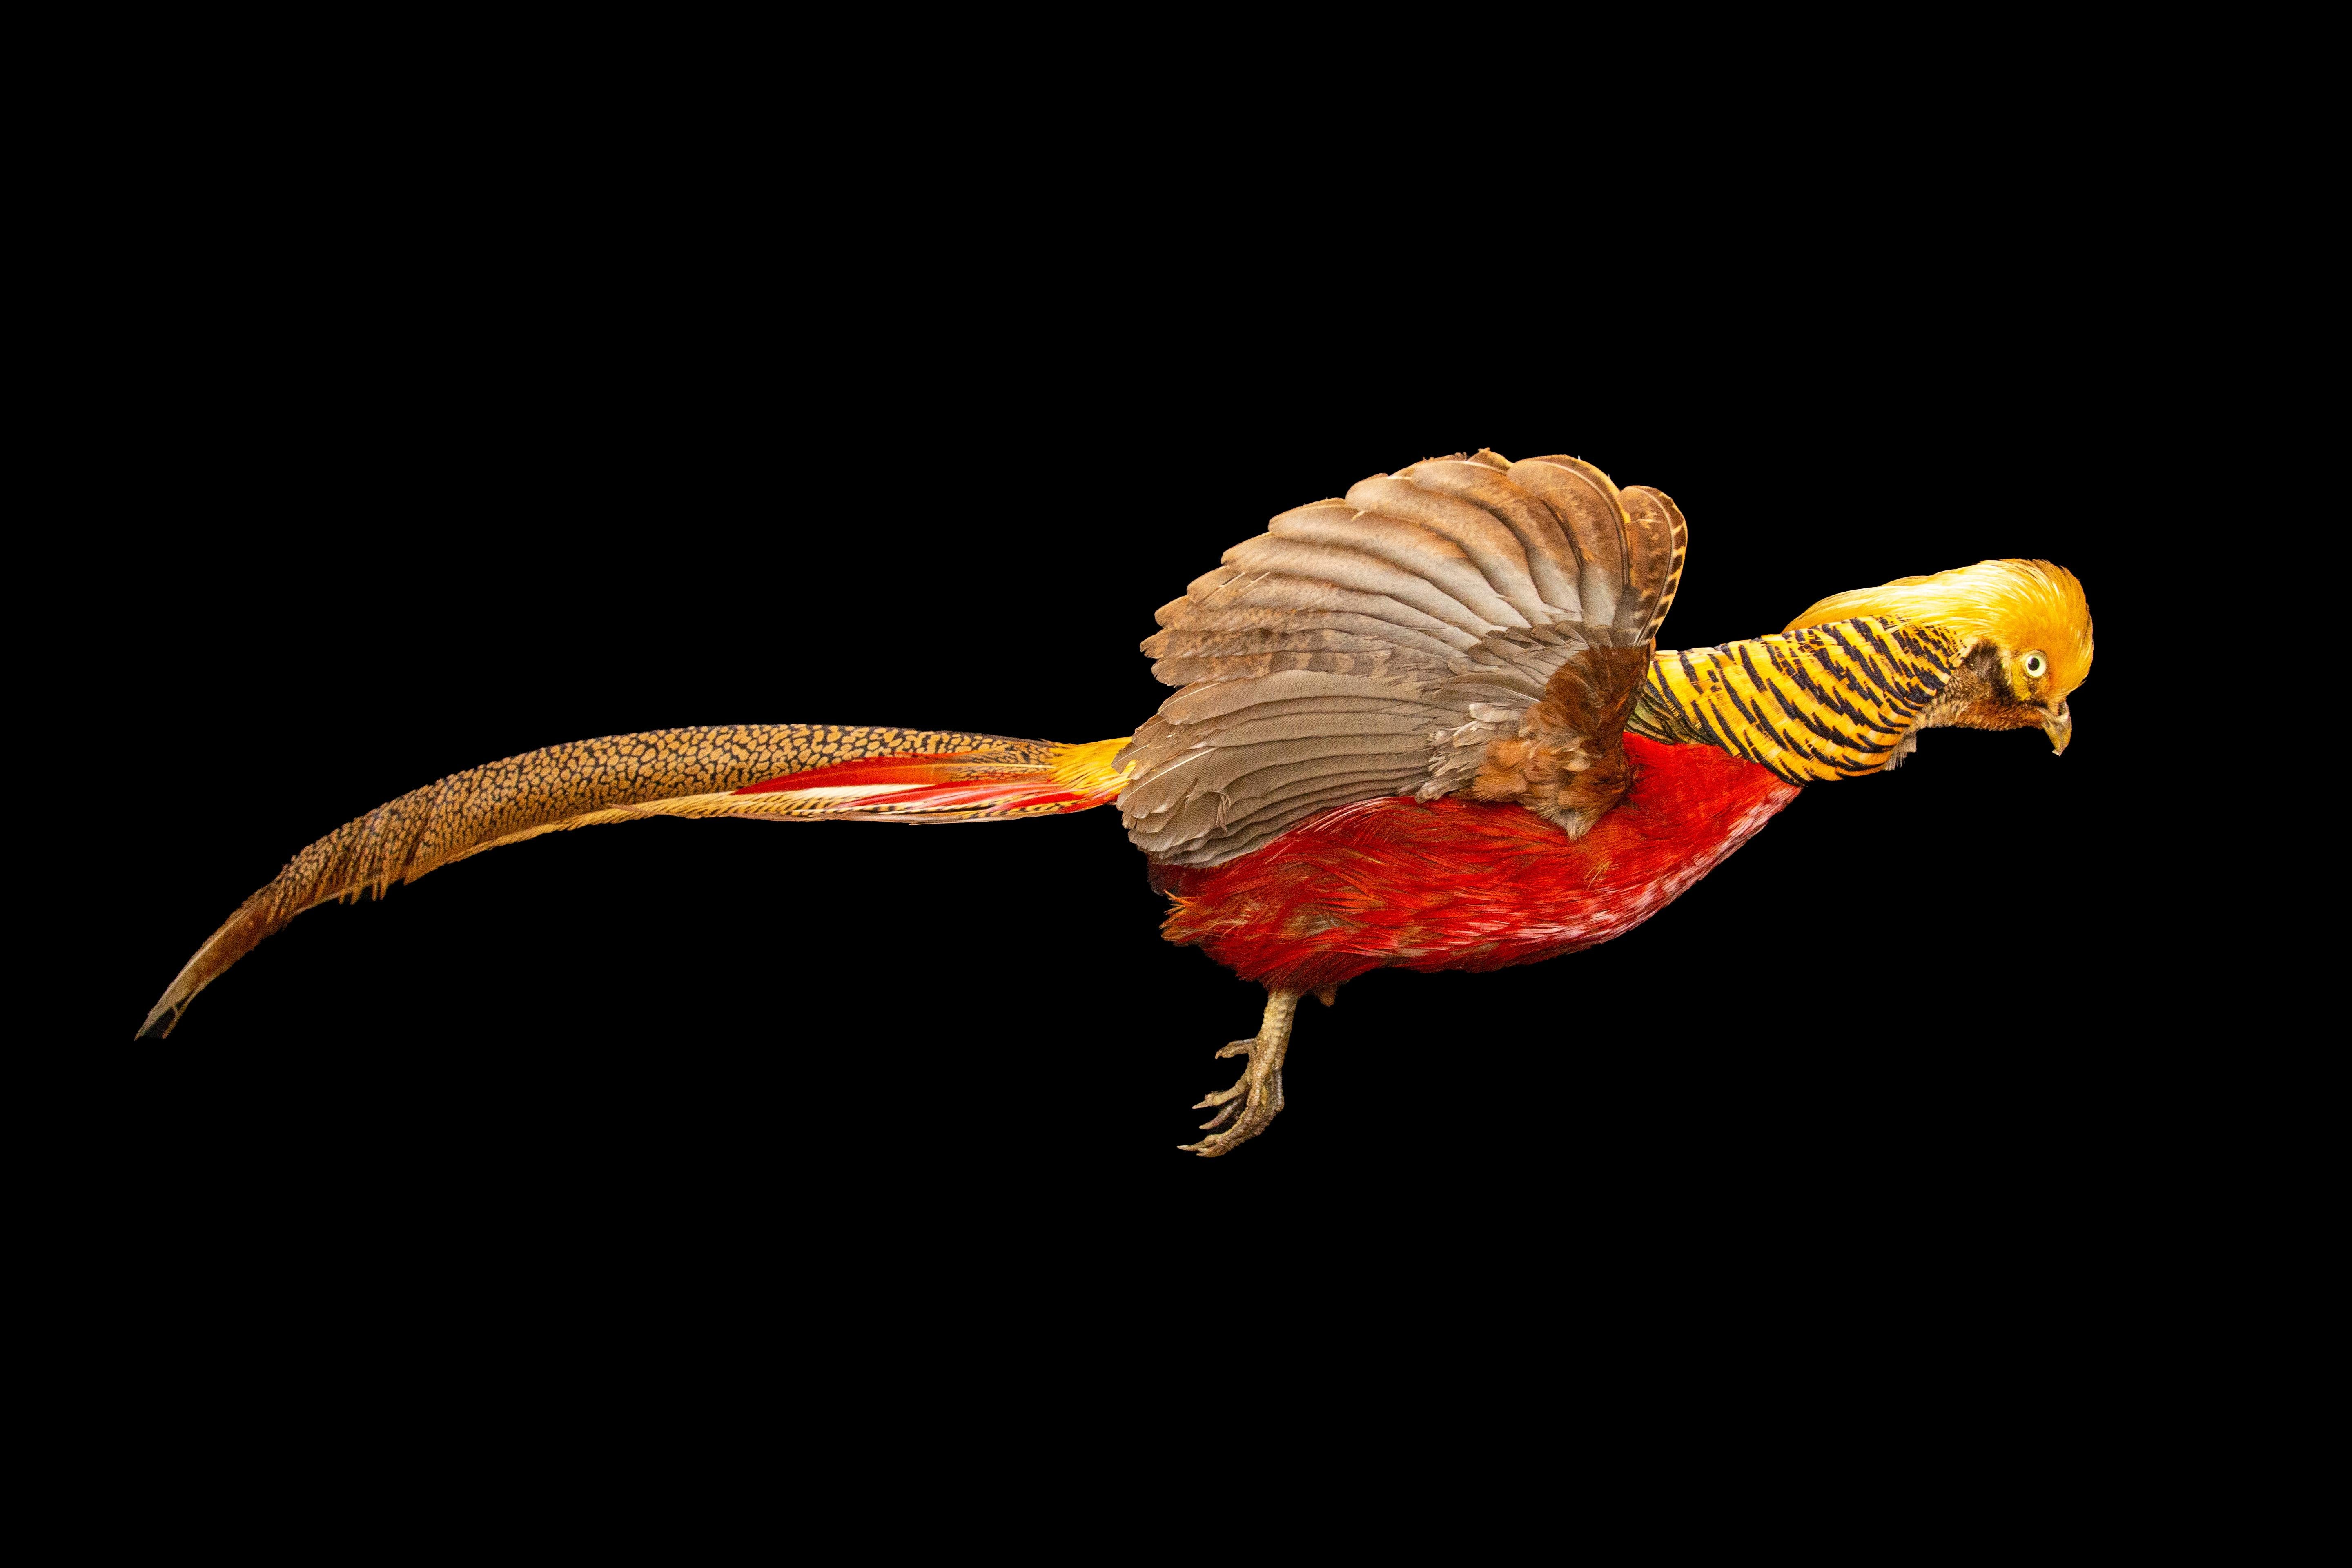 Dieser exquisite Taxidermie-Goldfasan ist eine atemberaubende Ergänzung für jede Sammlung oder Ausstellung. Der Vogel wurde fachmännisch konserviert und montiert, wobei jede Feder naturgetreu nachgebildet wurde. Das leuchtend goldene und rote